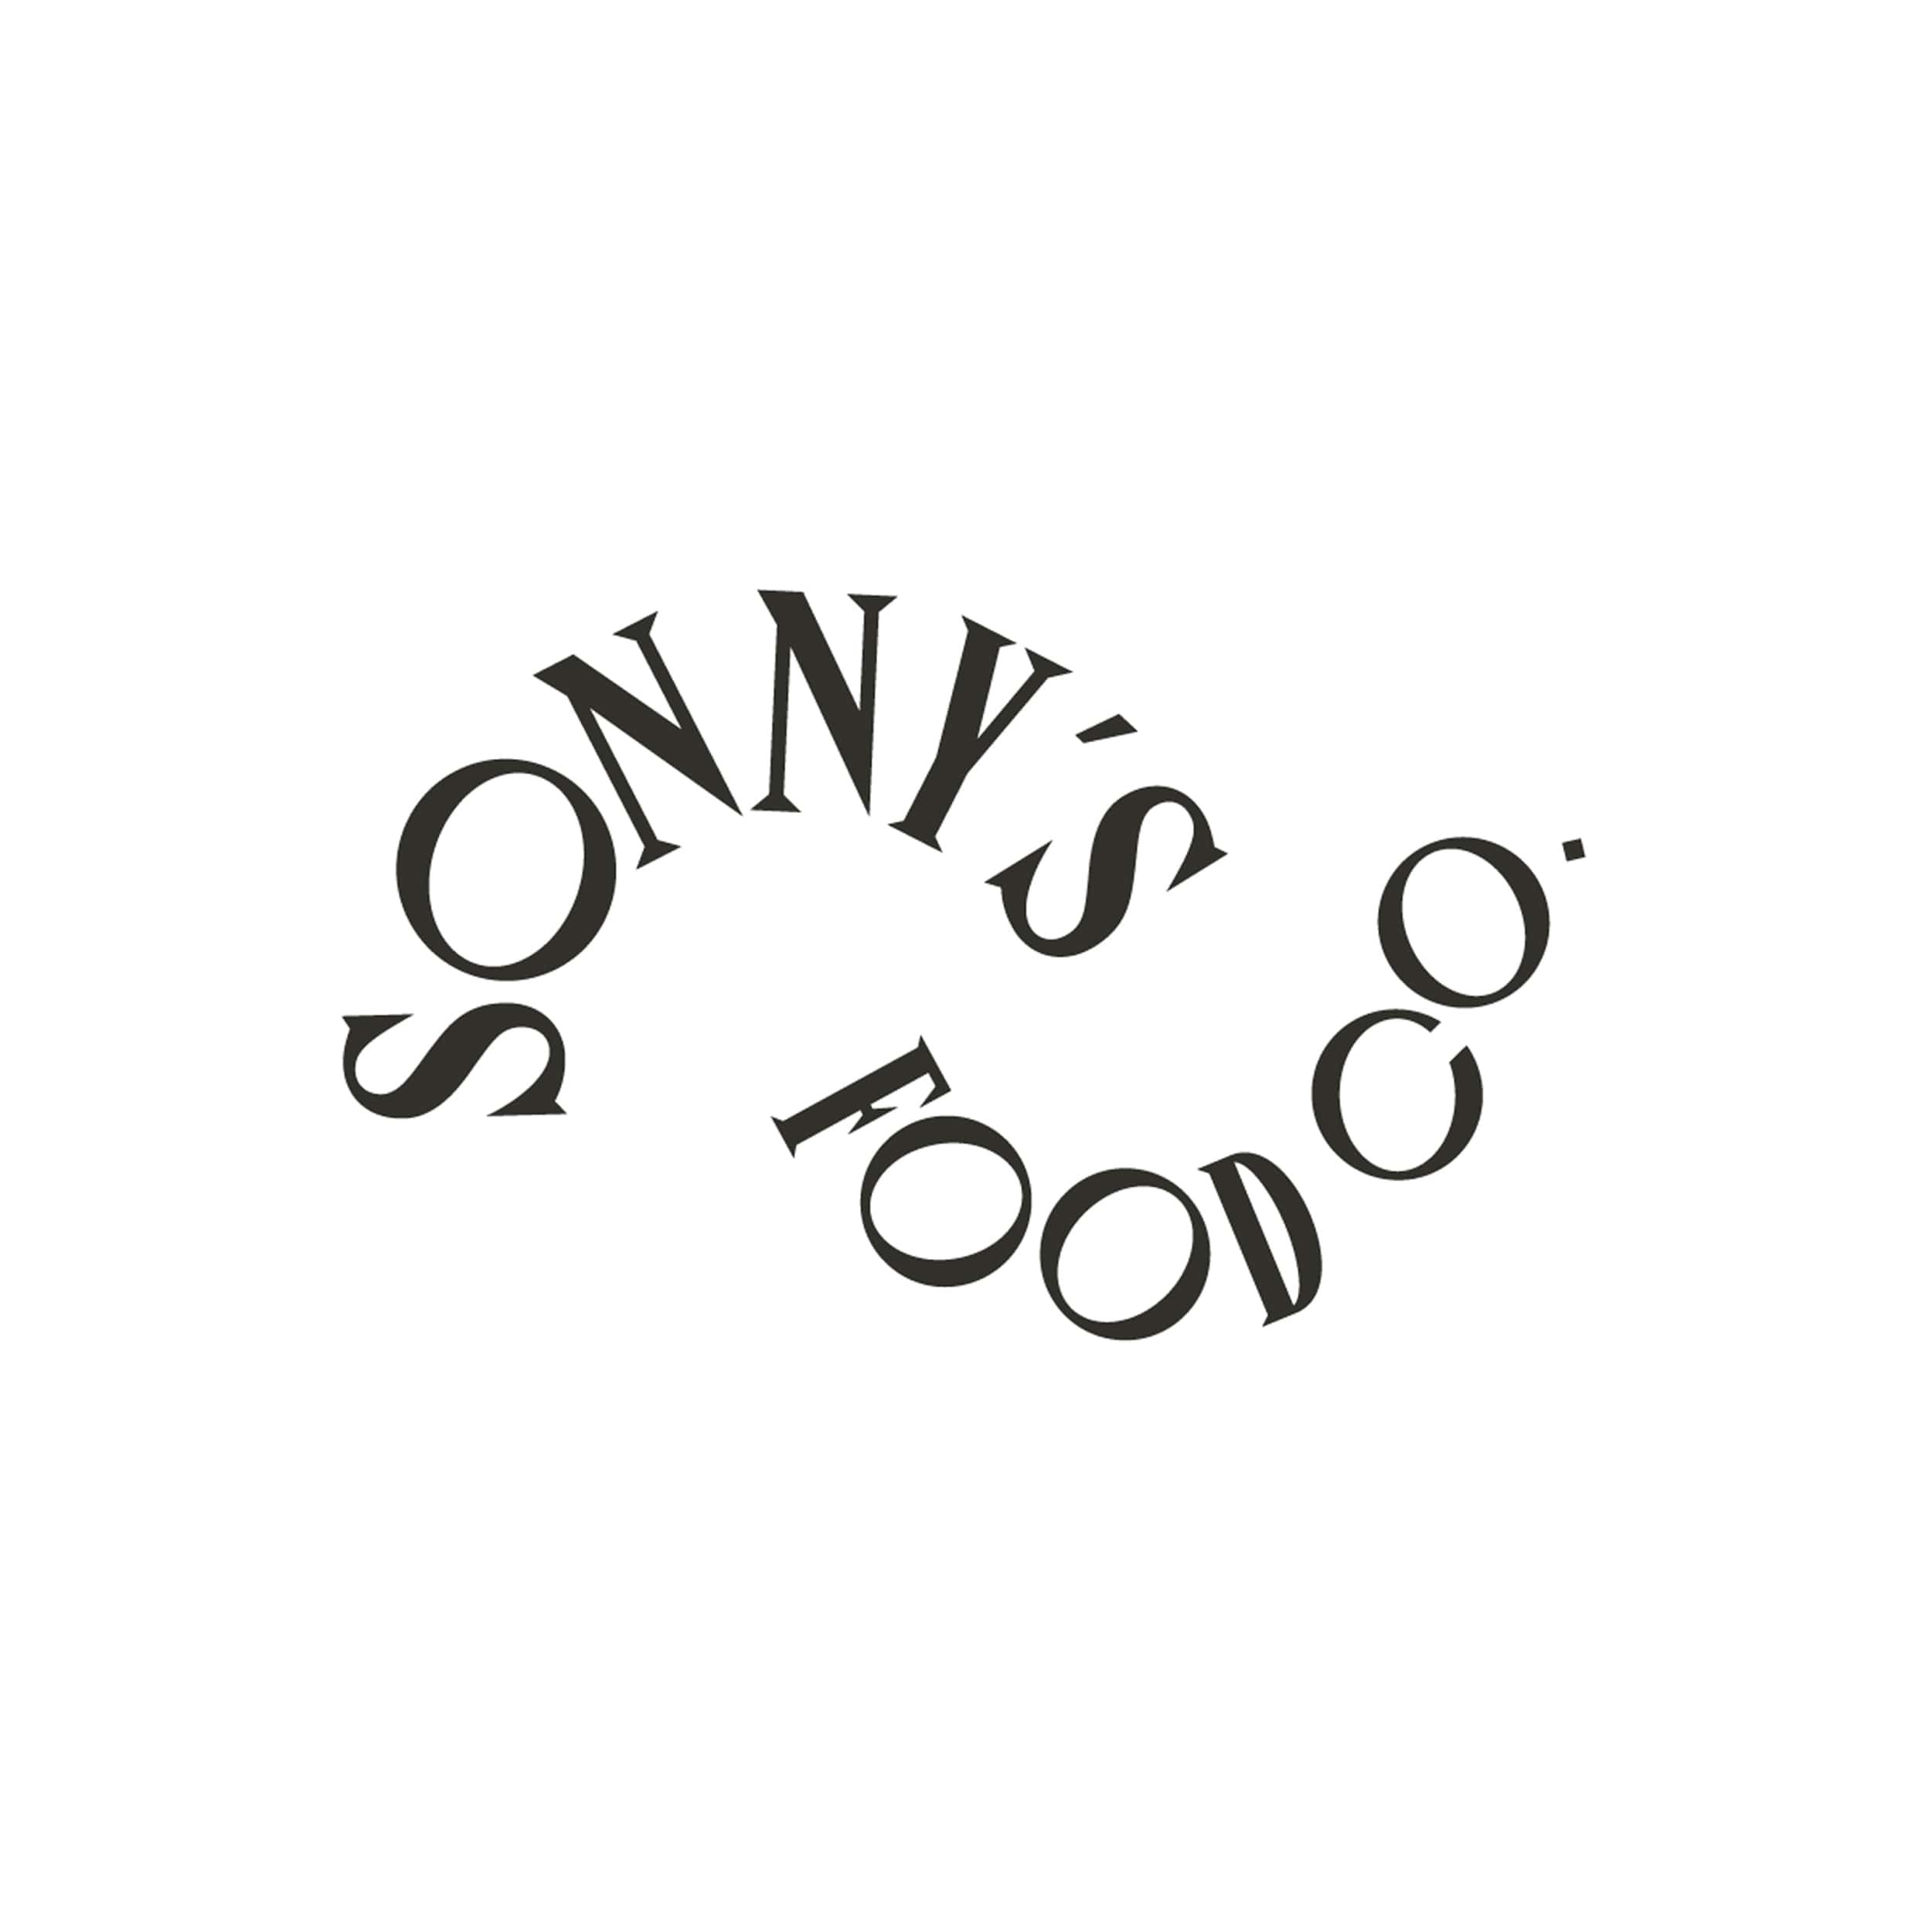 Sonnys Dried Citrus Logo - Tile.jpg